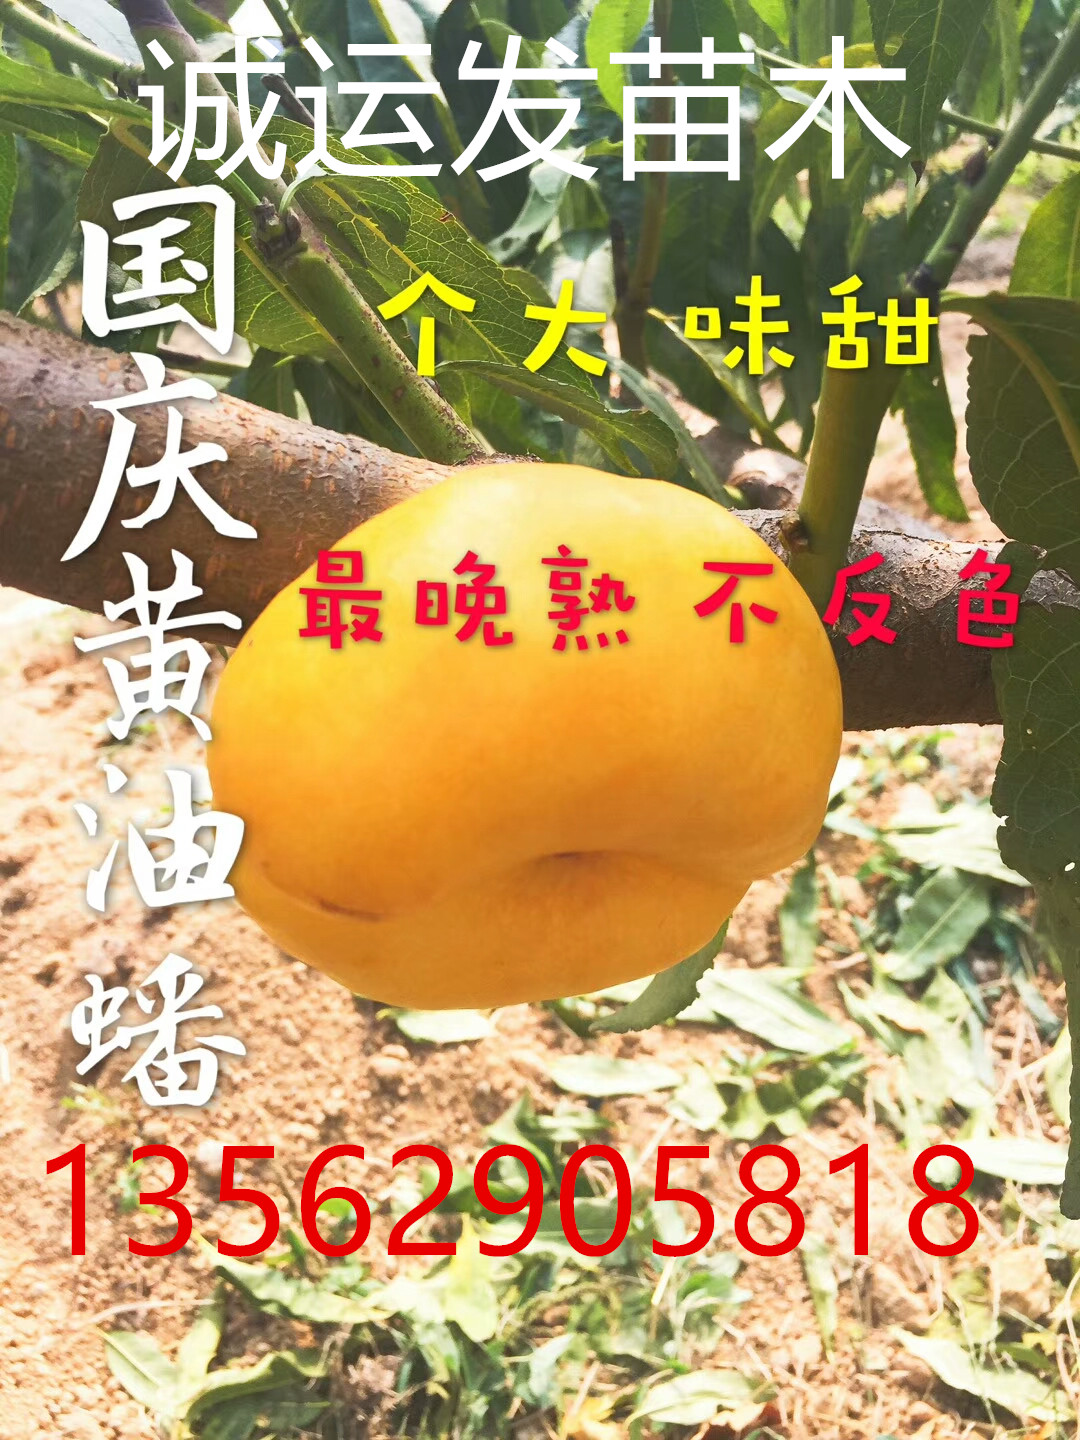 2017年早熟黄桃新品种贵的桃子是什么品种